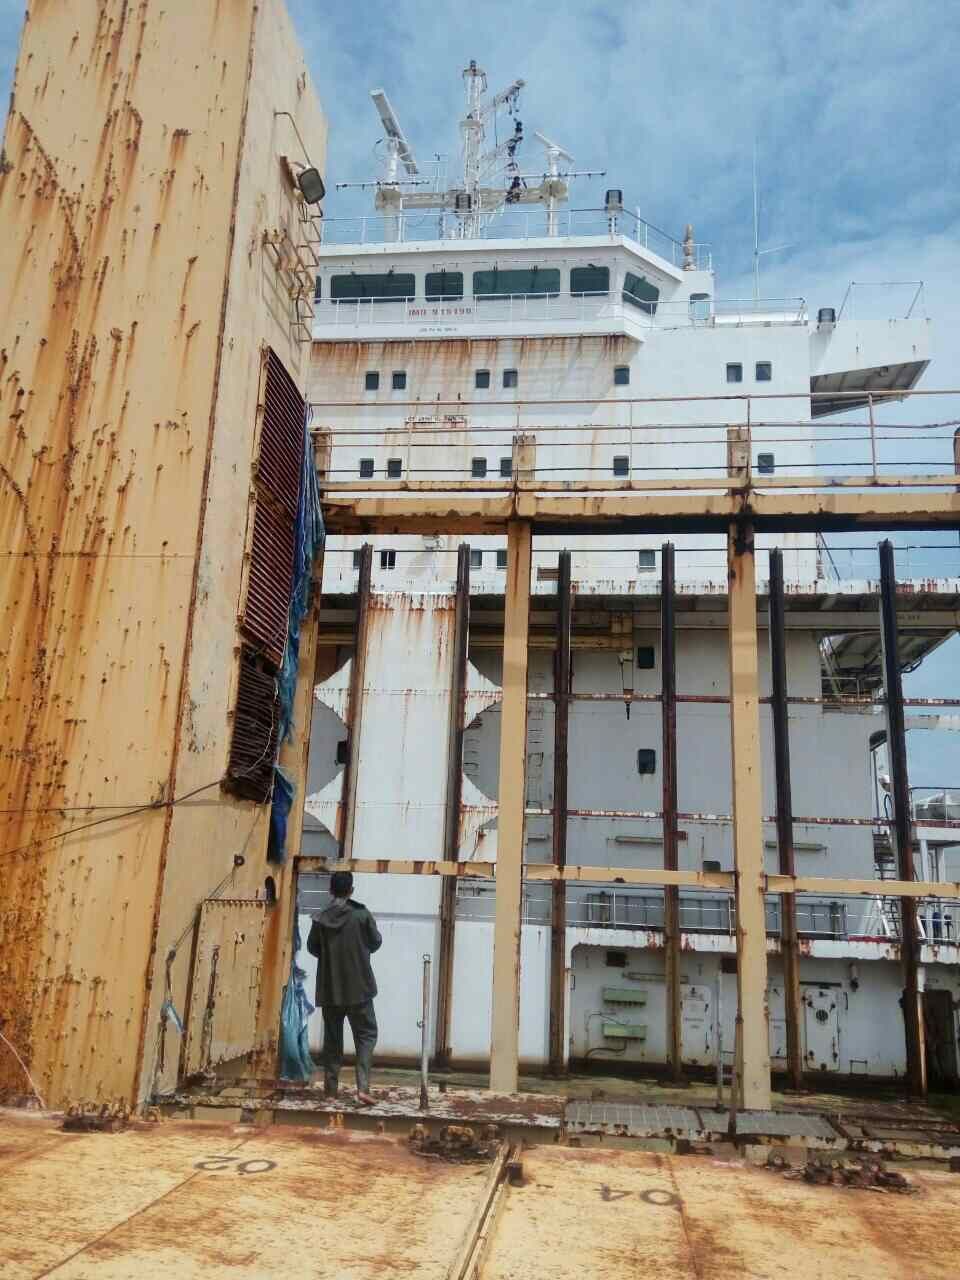 Kapal barang Sam Ratulangi PB 1600 itu disebutkan dalam keadaan laik jalan